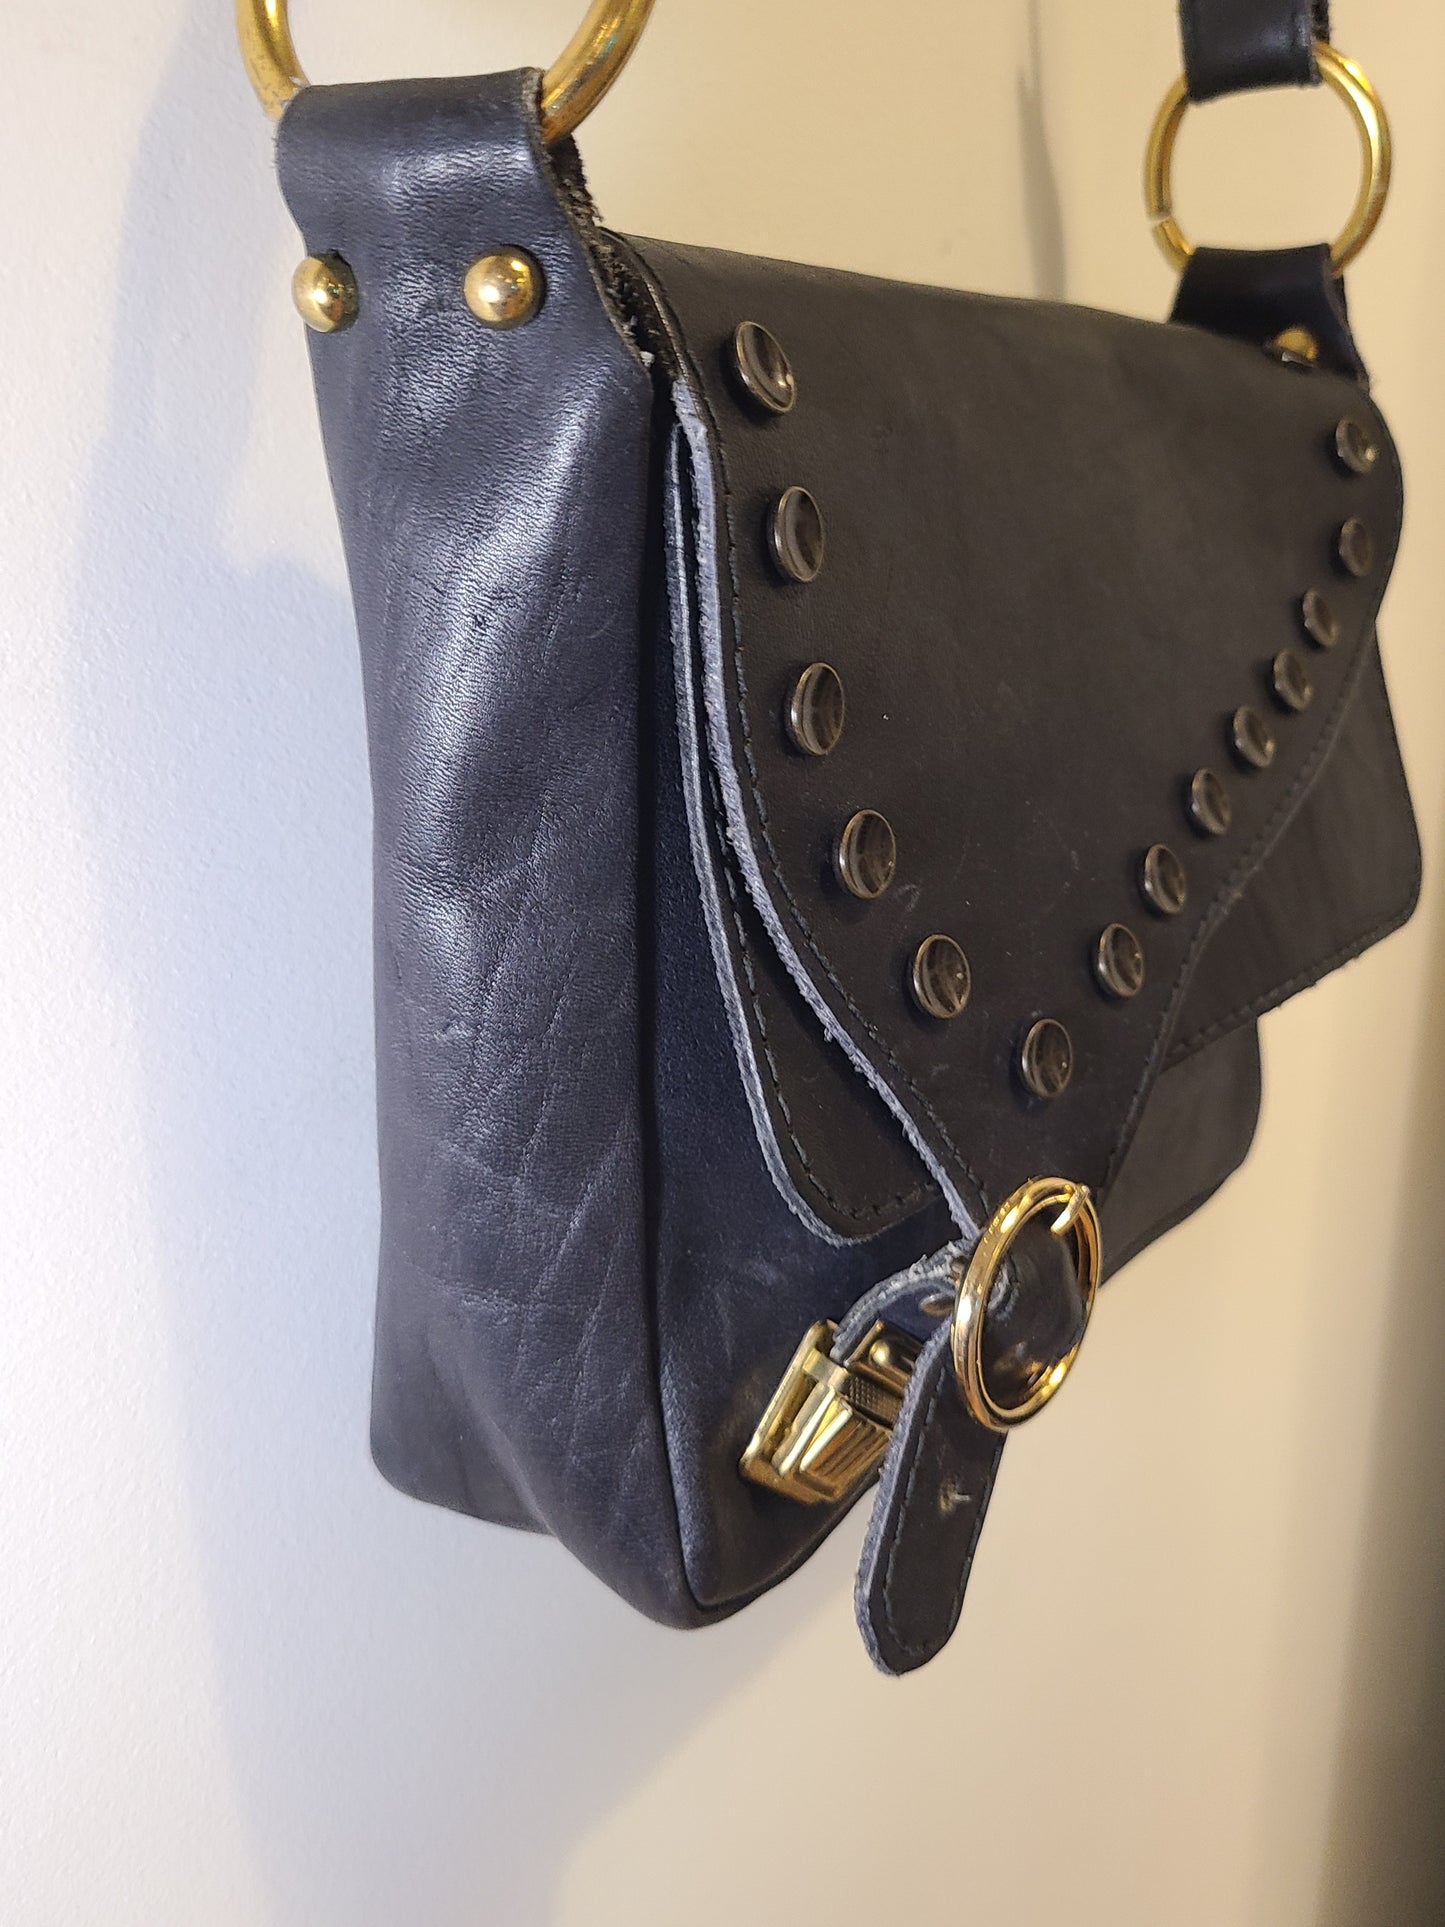 Vintage 1980s Navy Leather Shoulder Bag Re-Imagined